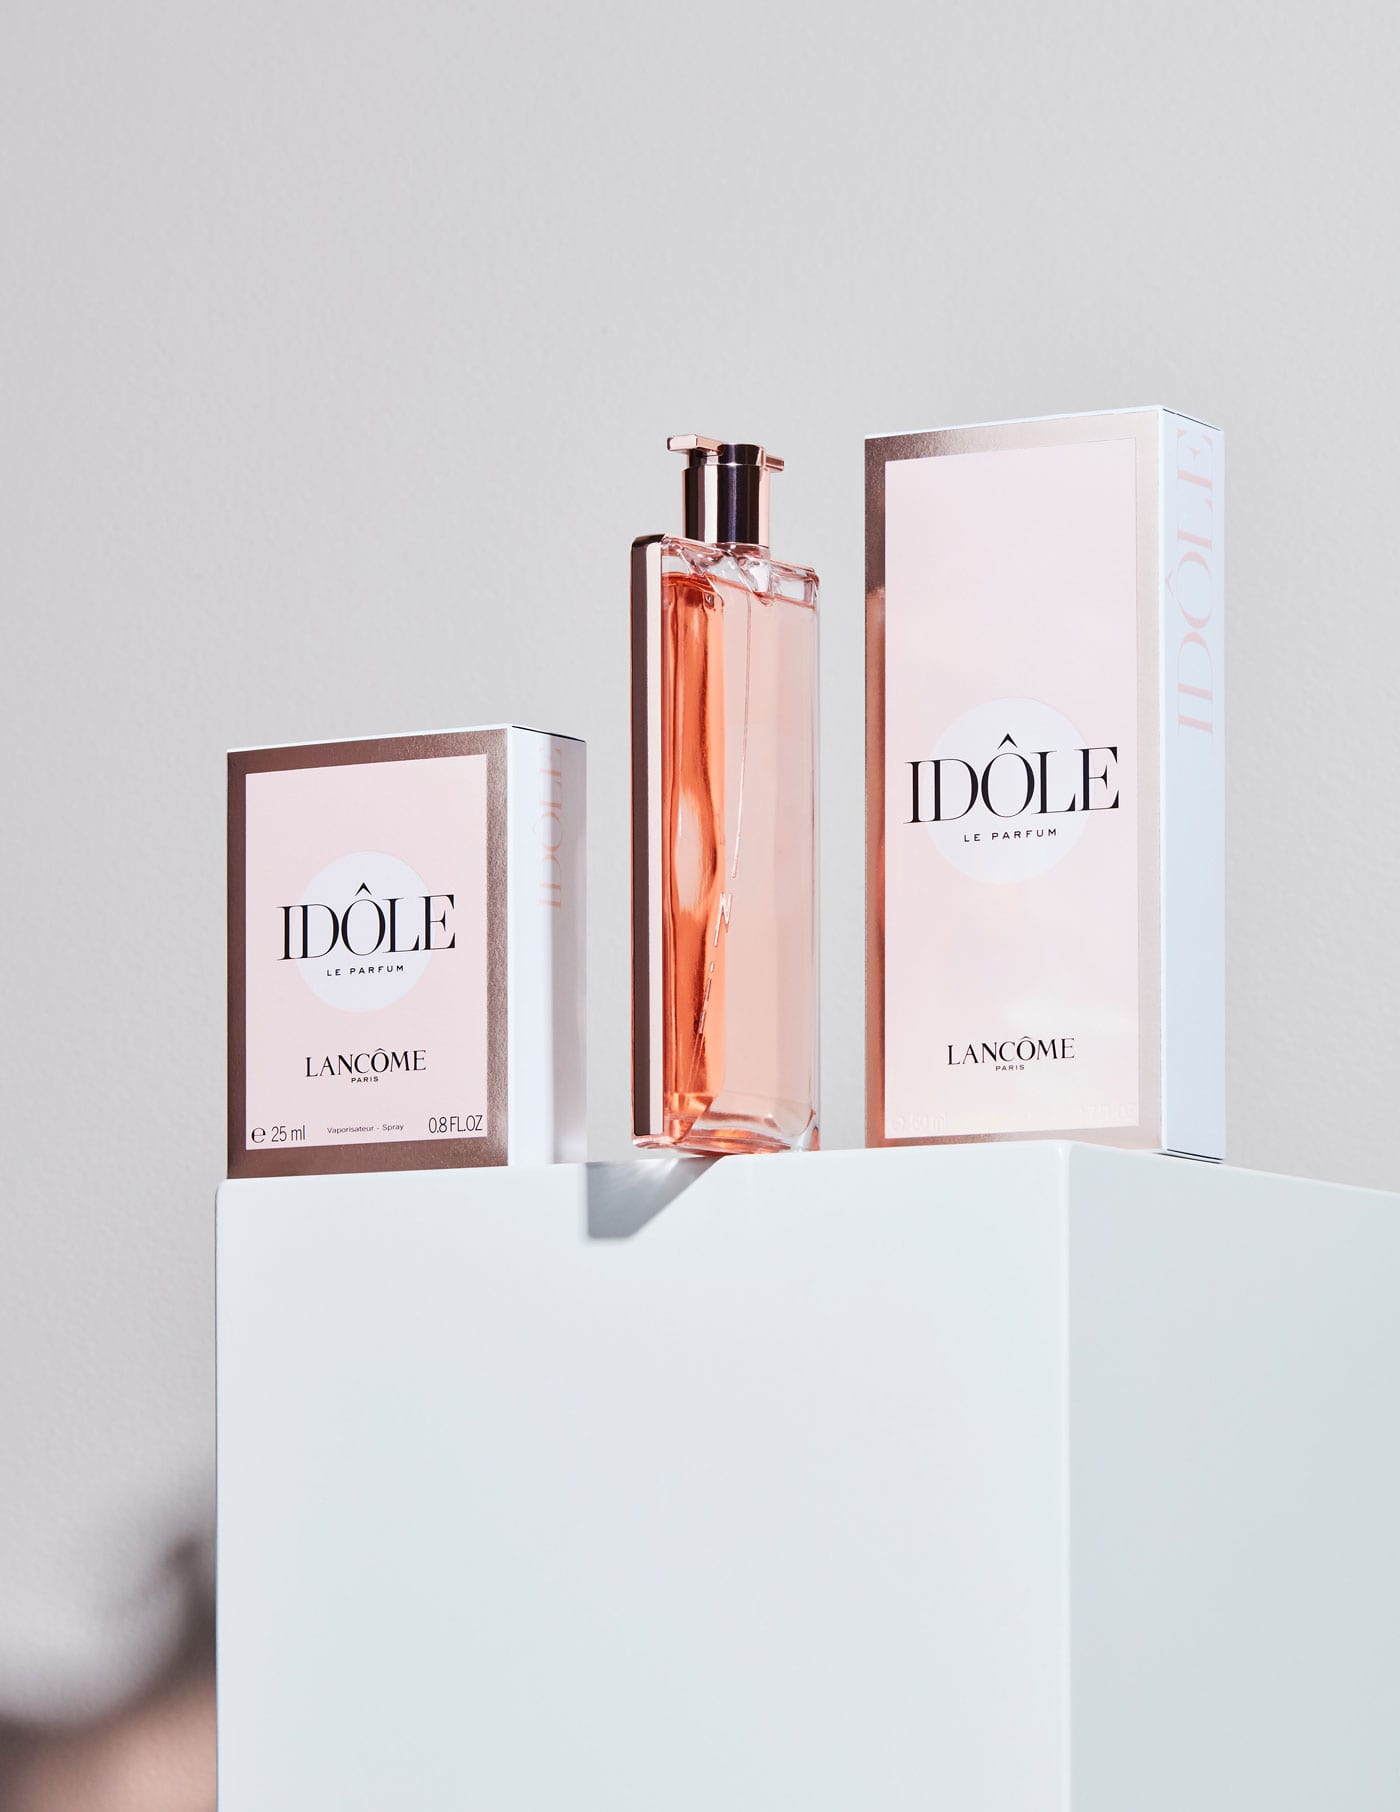 Lancôme – Idôle Le Parfum